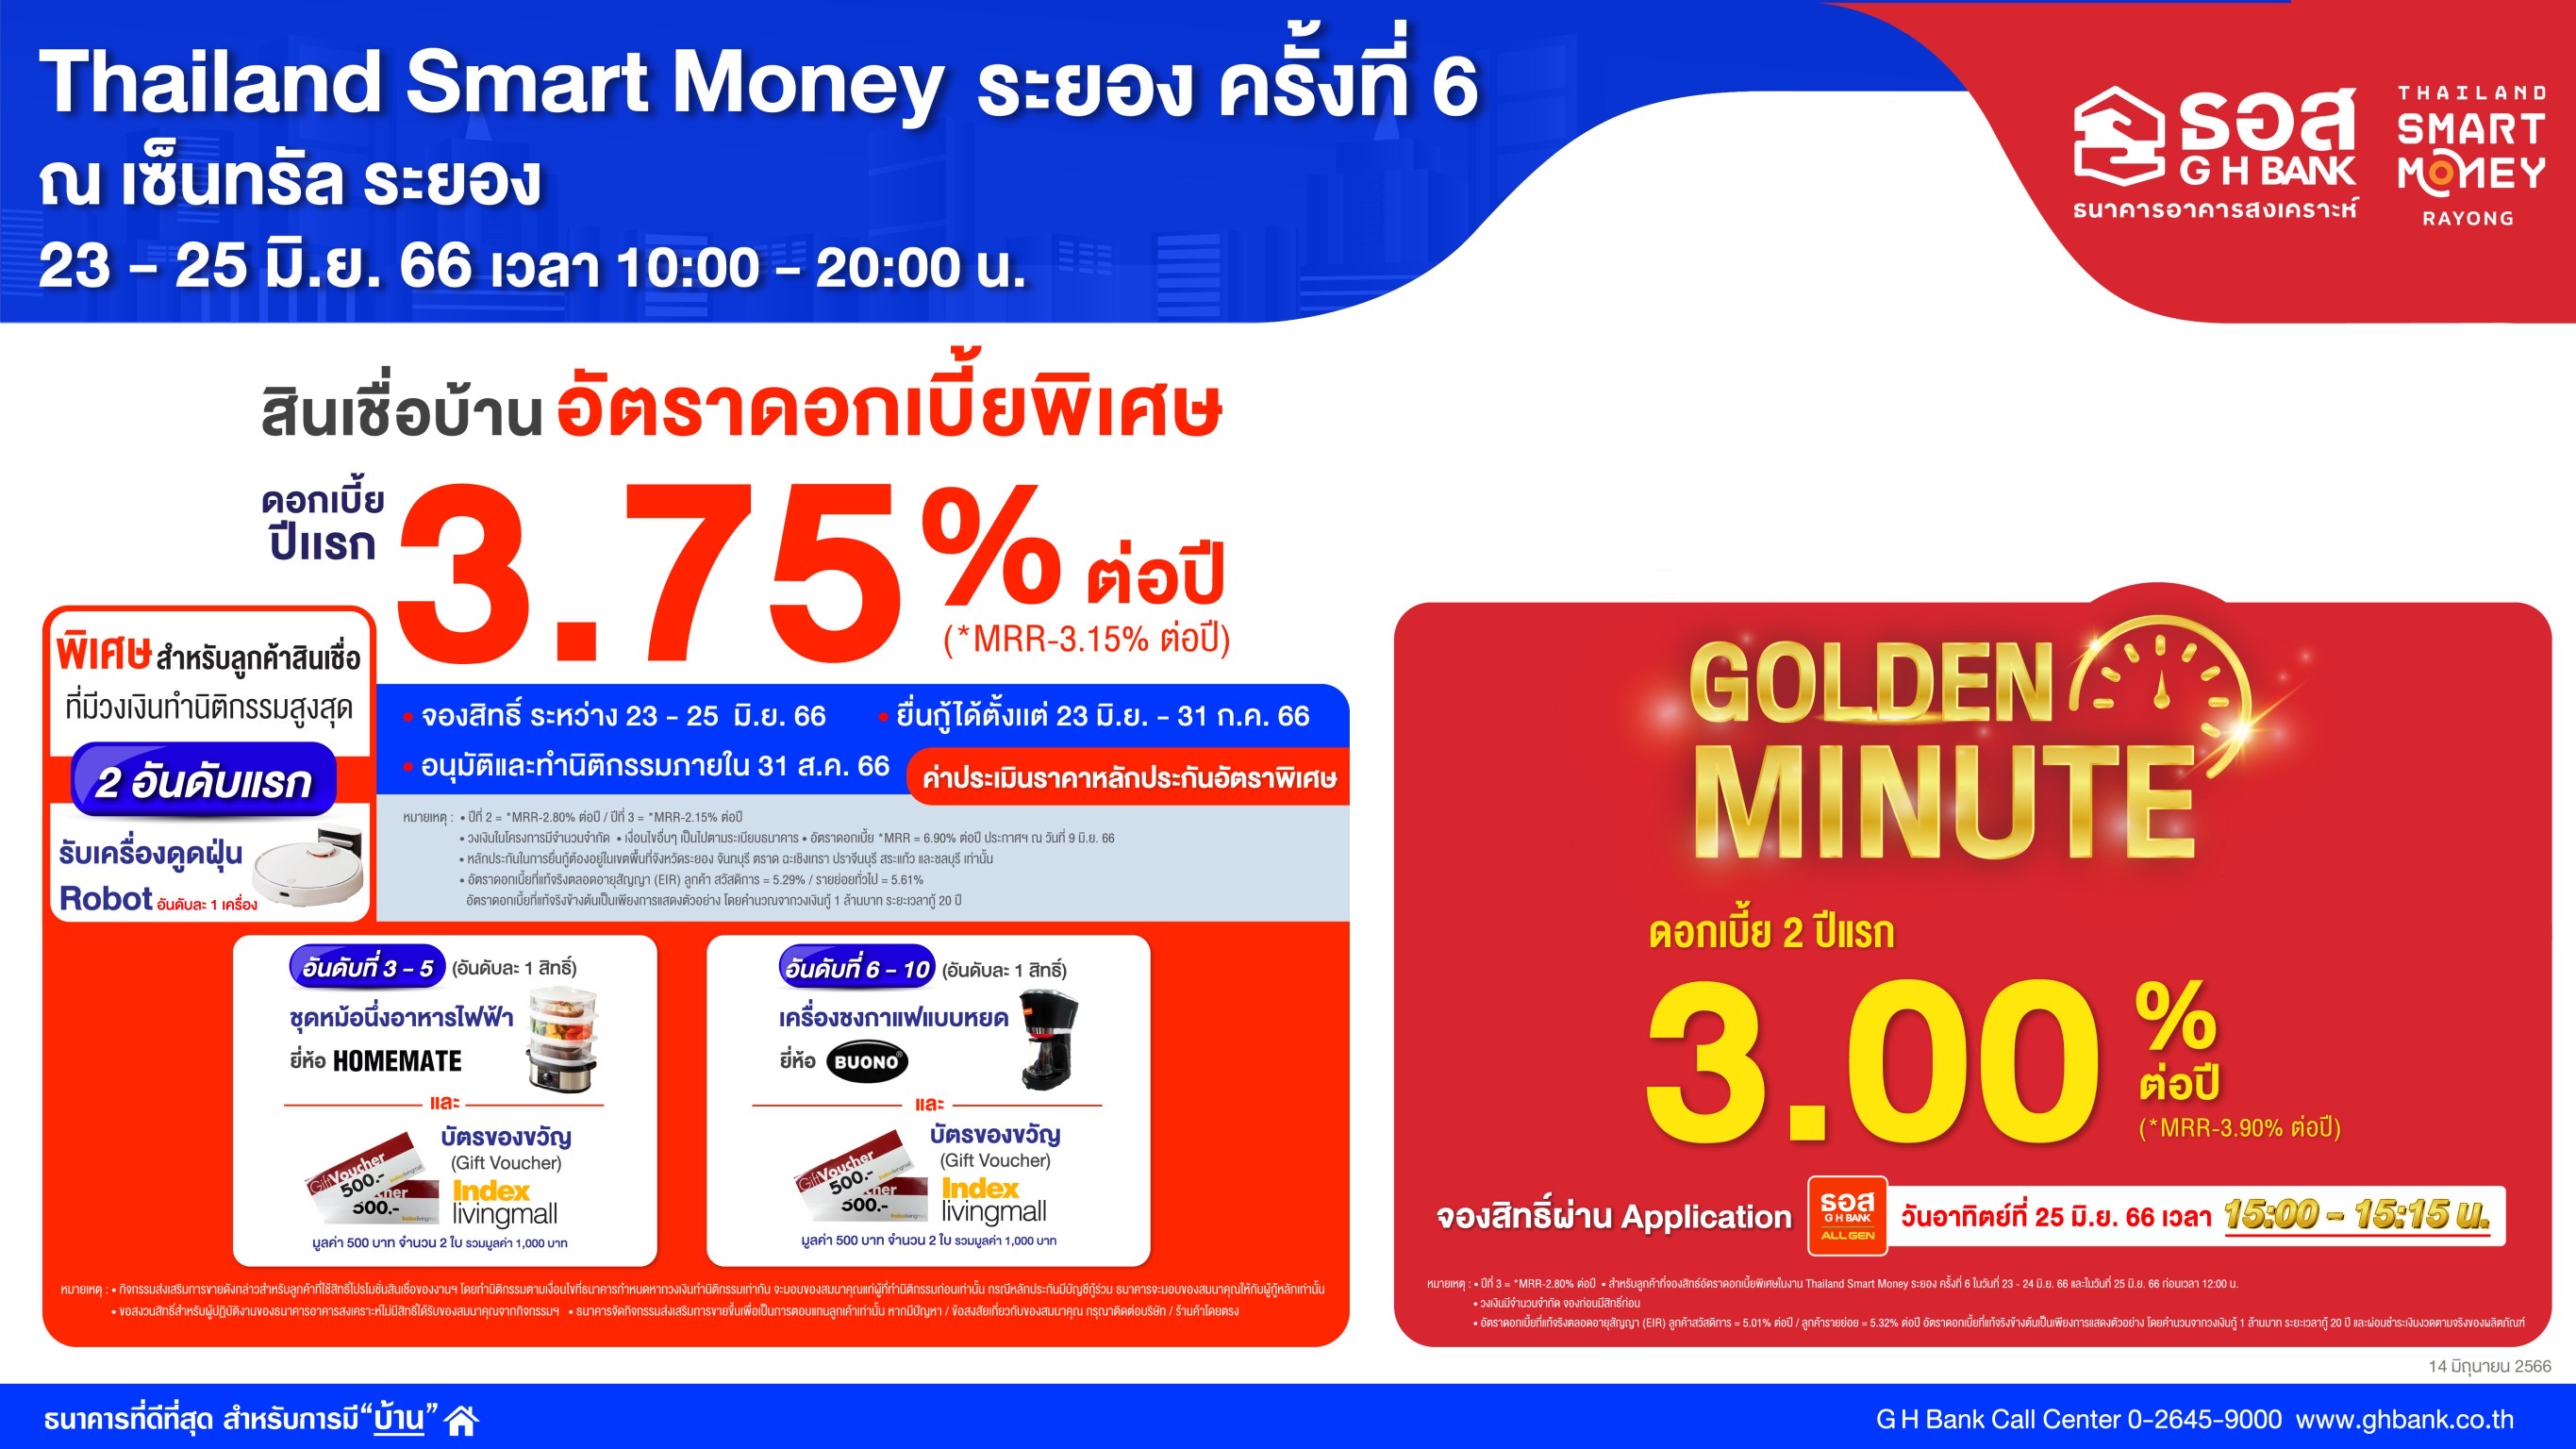 ธอส. ขนโปรโมชั่น สินเชื่อบ้านดอกเบี้ย 2 ปีแรกเพียง  3% ต่อปี ร่วมงาน“Thailand Smart Money ระยอง ครั้งที่ 6” ระหว่างวันที่ 23-25 มิ.ย.นี้